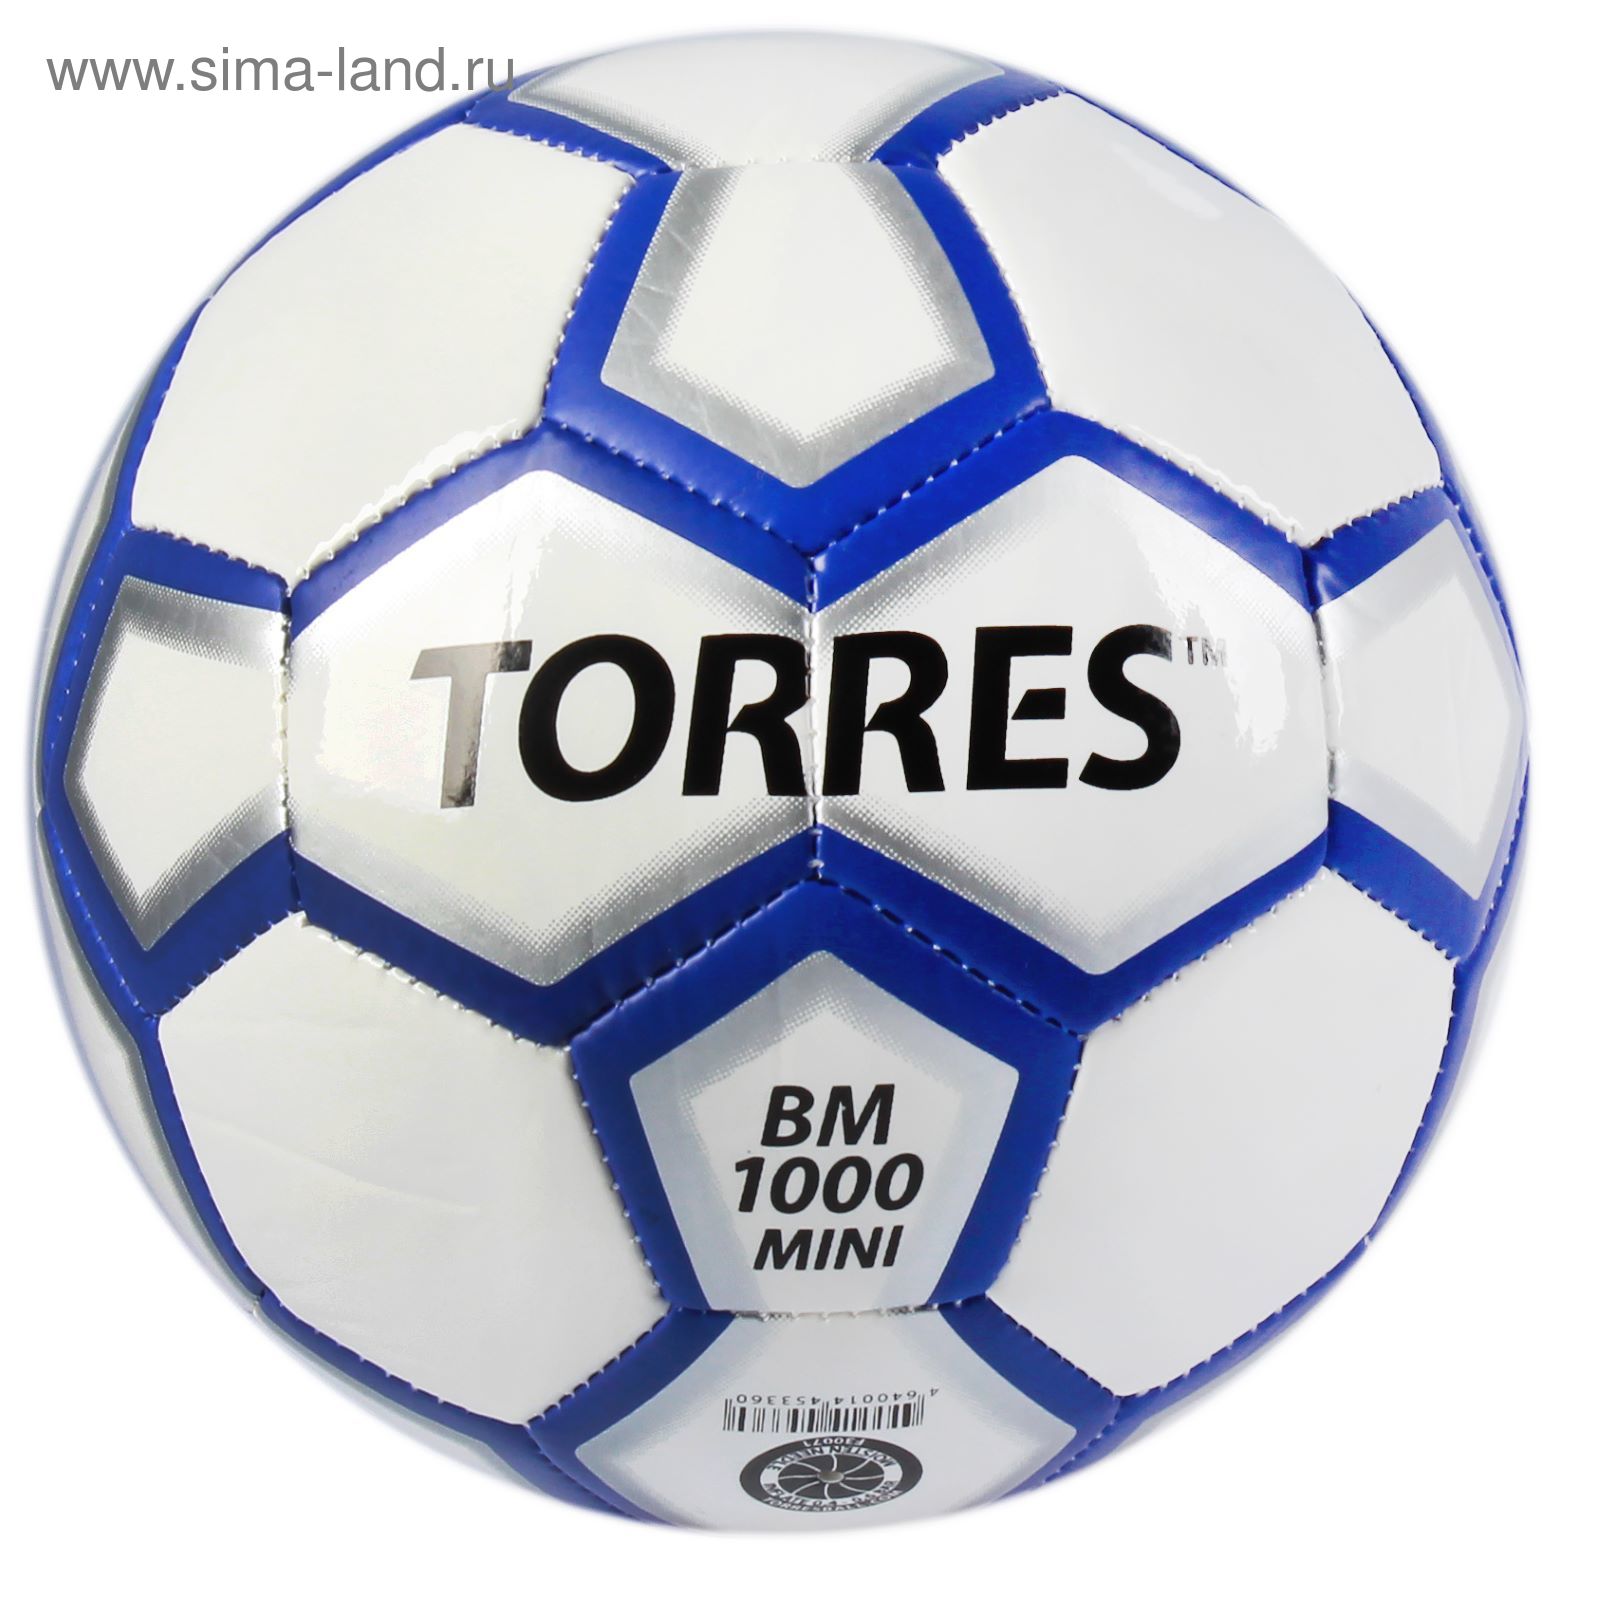 Мяч футбольный сувенирный Torres BM1000 Mini, F30071, размер 1